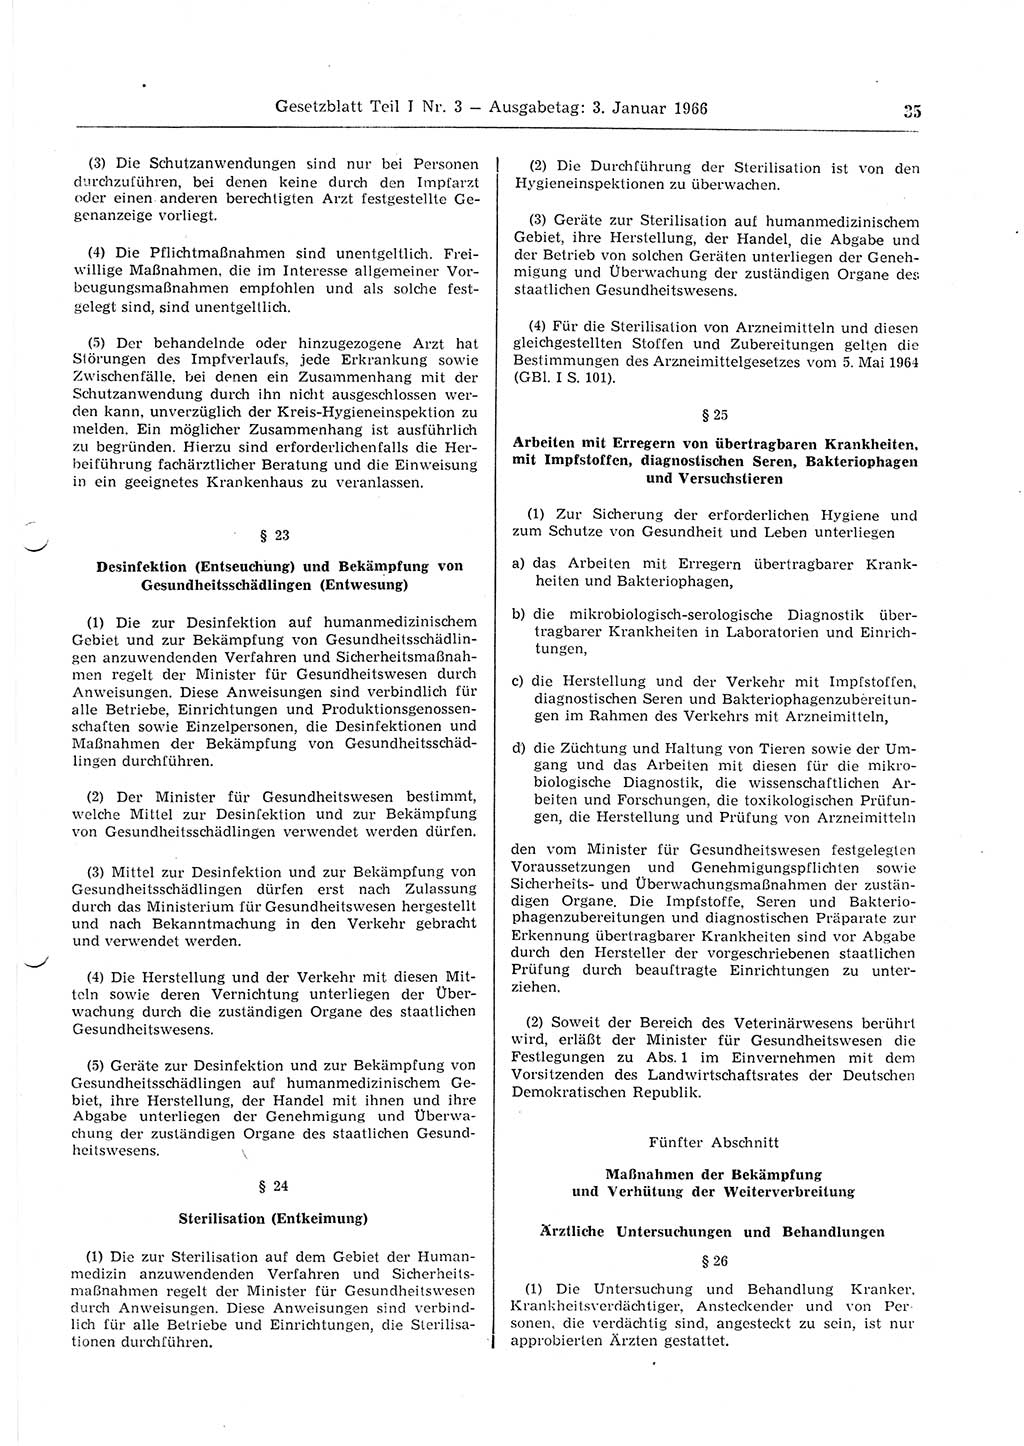 Gesetzblatt (GBl.) der Deutschen Demokratischen Republik (DDR) Teil Ⅰ 1966, Seite 35 (GBl. DDR Ⅰ 1966, S. 35)